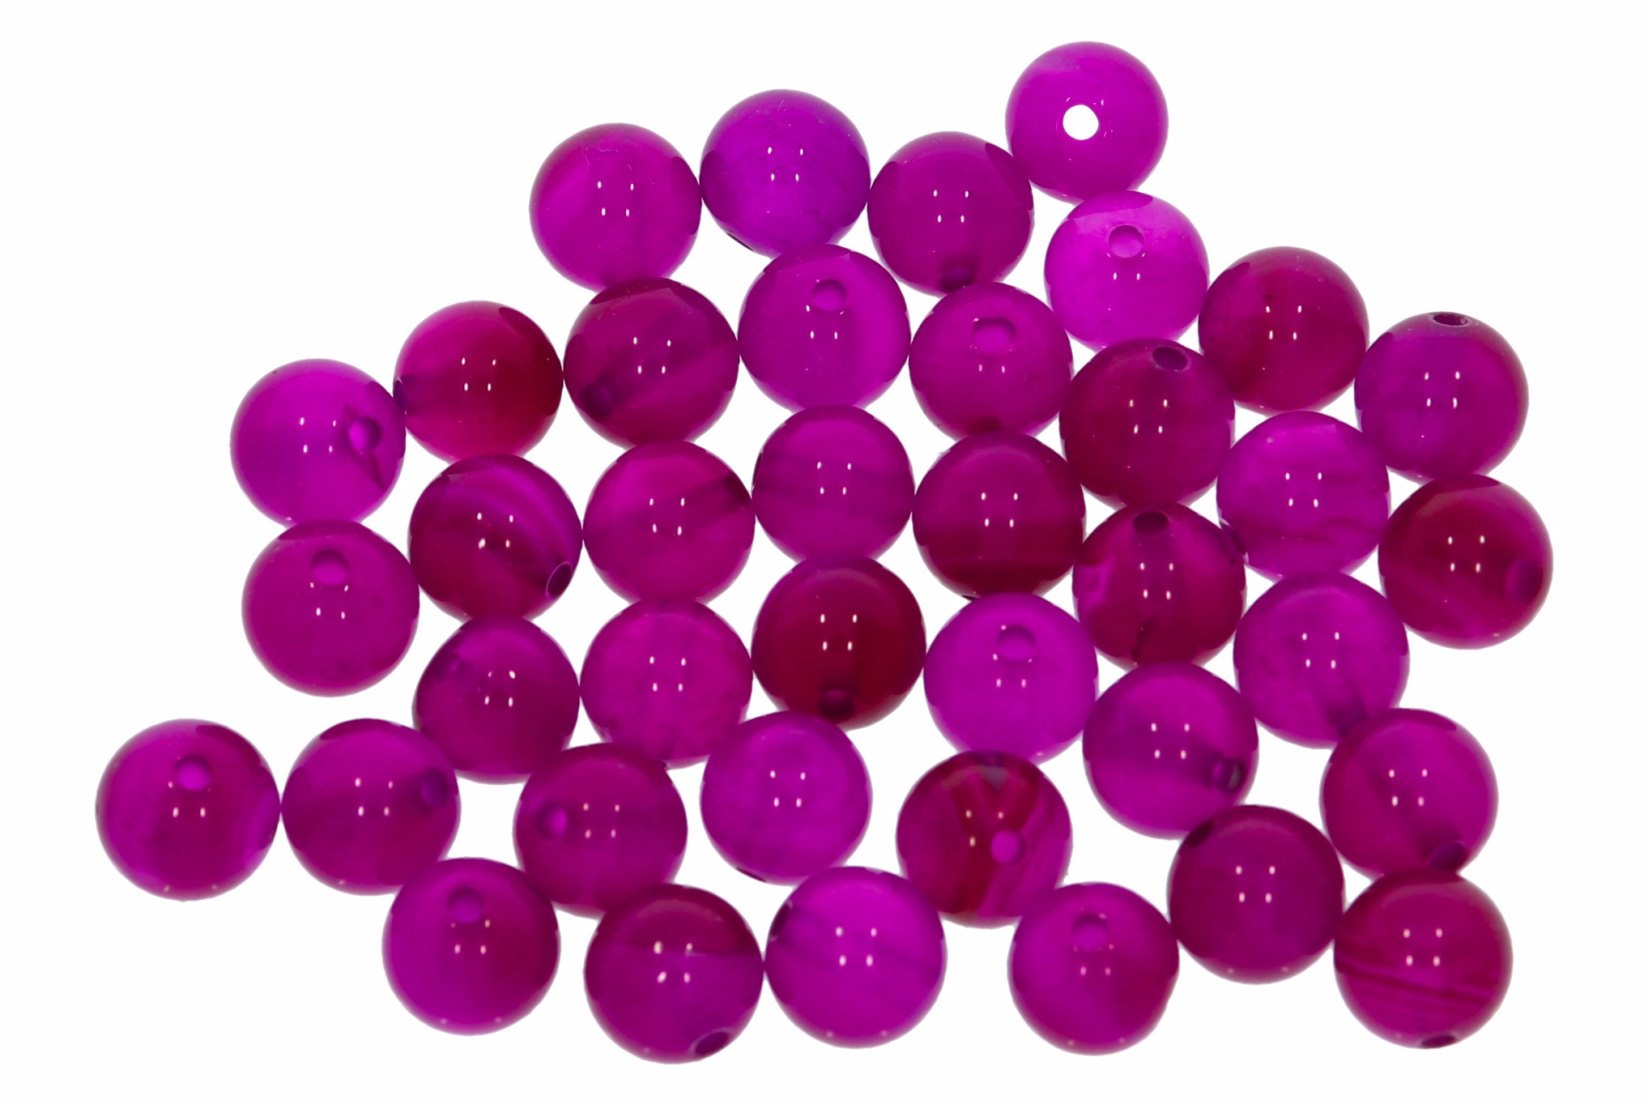 Achat rosa einfarbig   6S155 - 6mm Edelstein Kugel 10 Stück